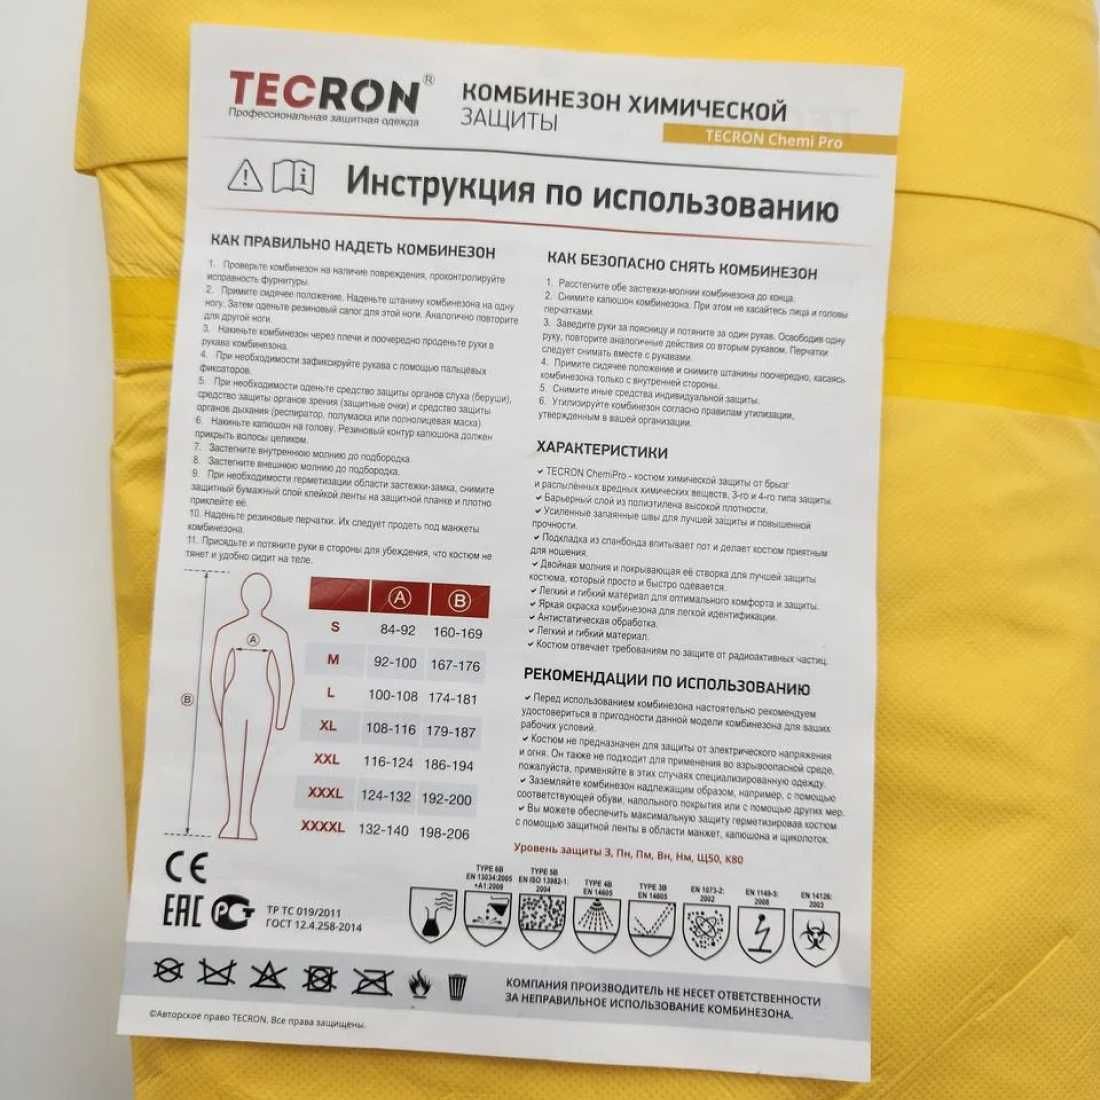 Комбинезон химической защиты TECRON Chemi Pro ТИП 3, химзащита 90 г/м